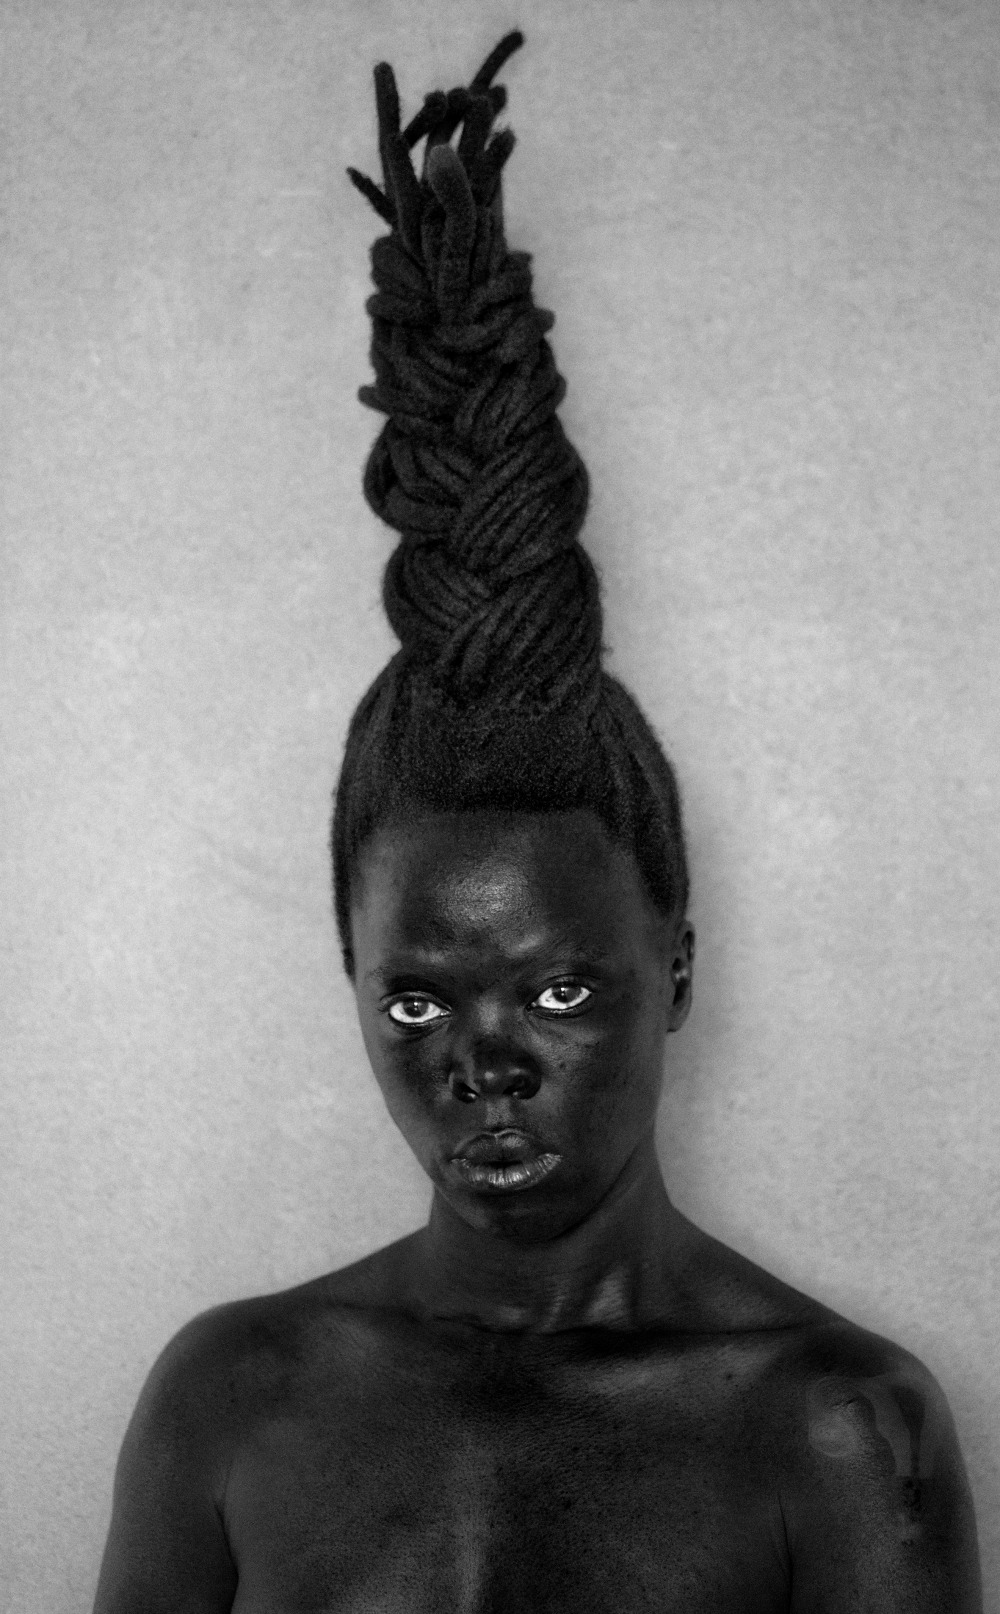 Art/ Afrique, le nouvel atelier: Focus sur la représentation de la femme noire